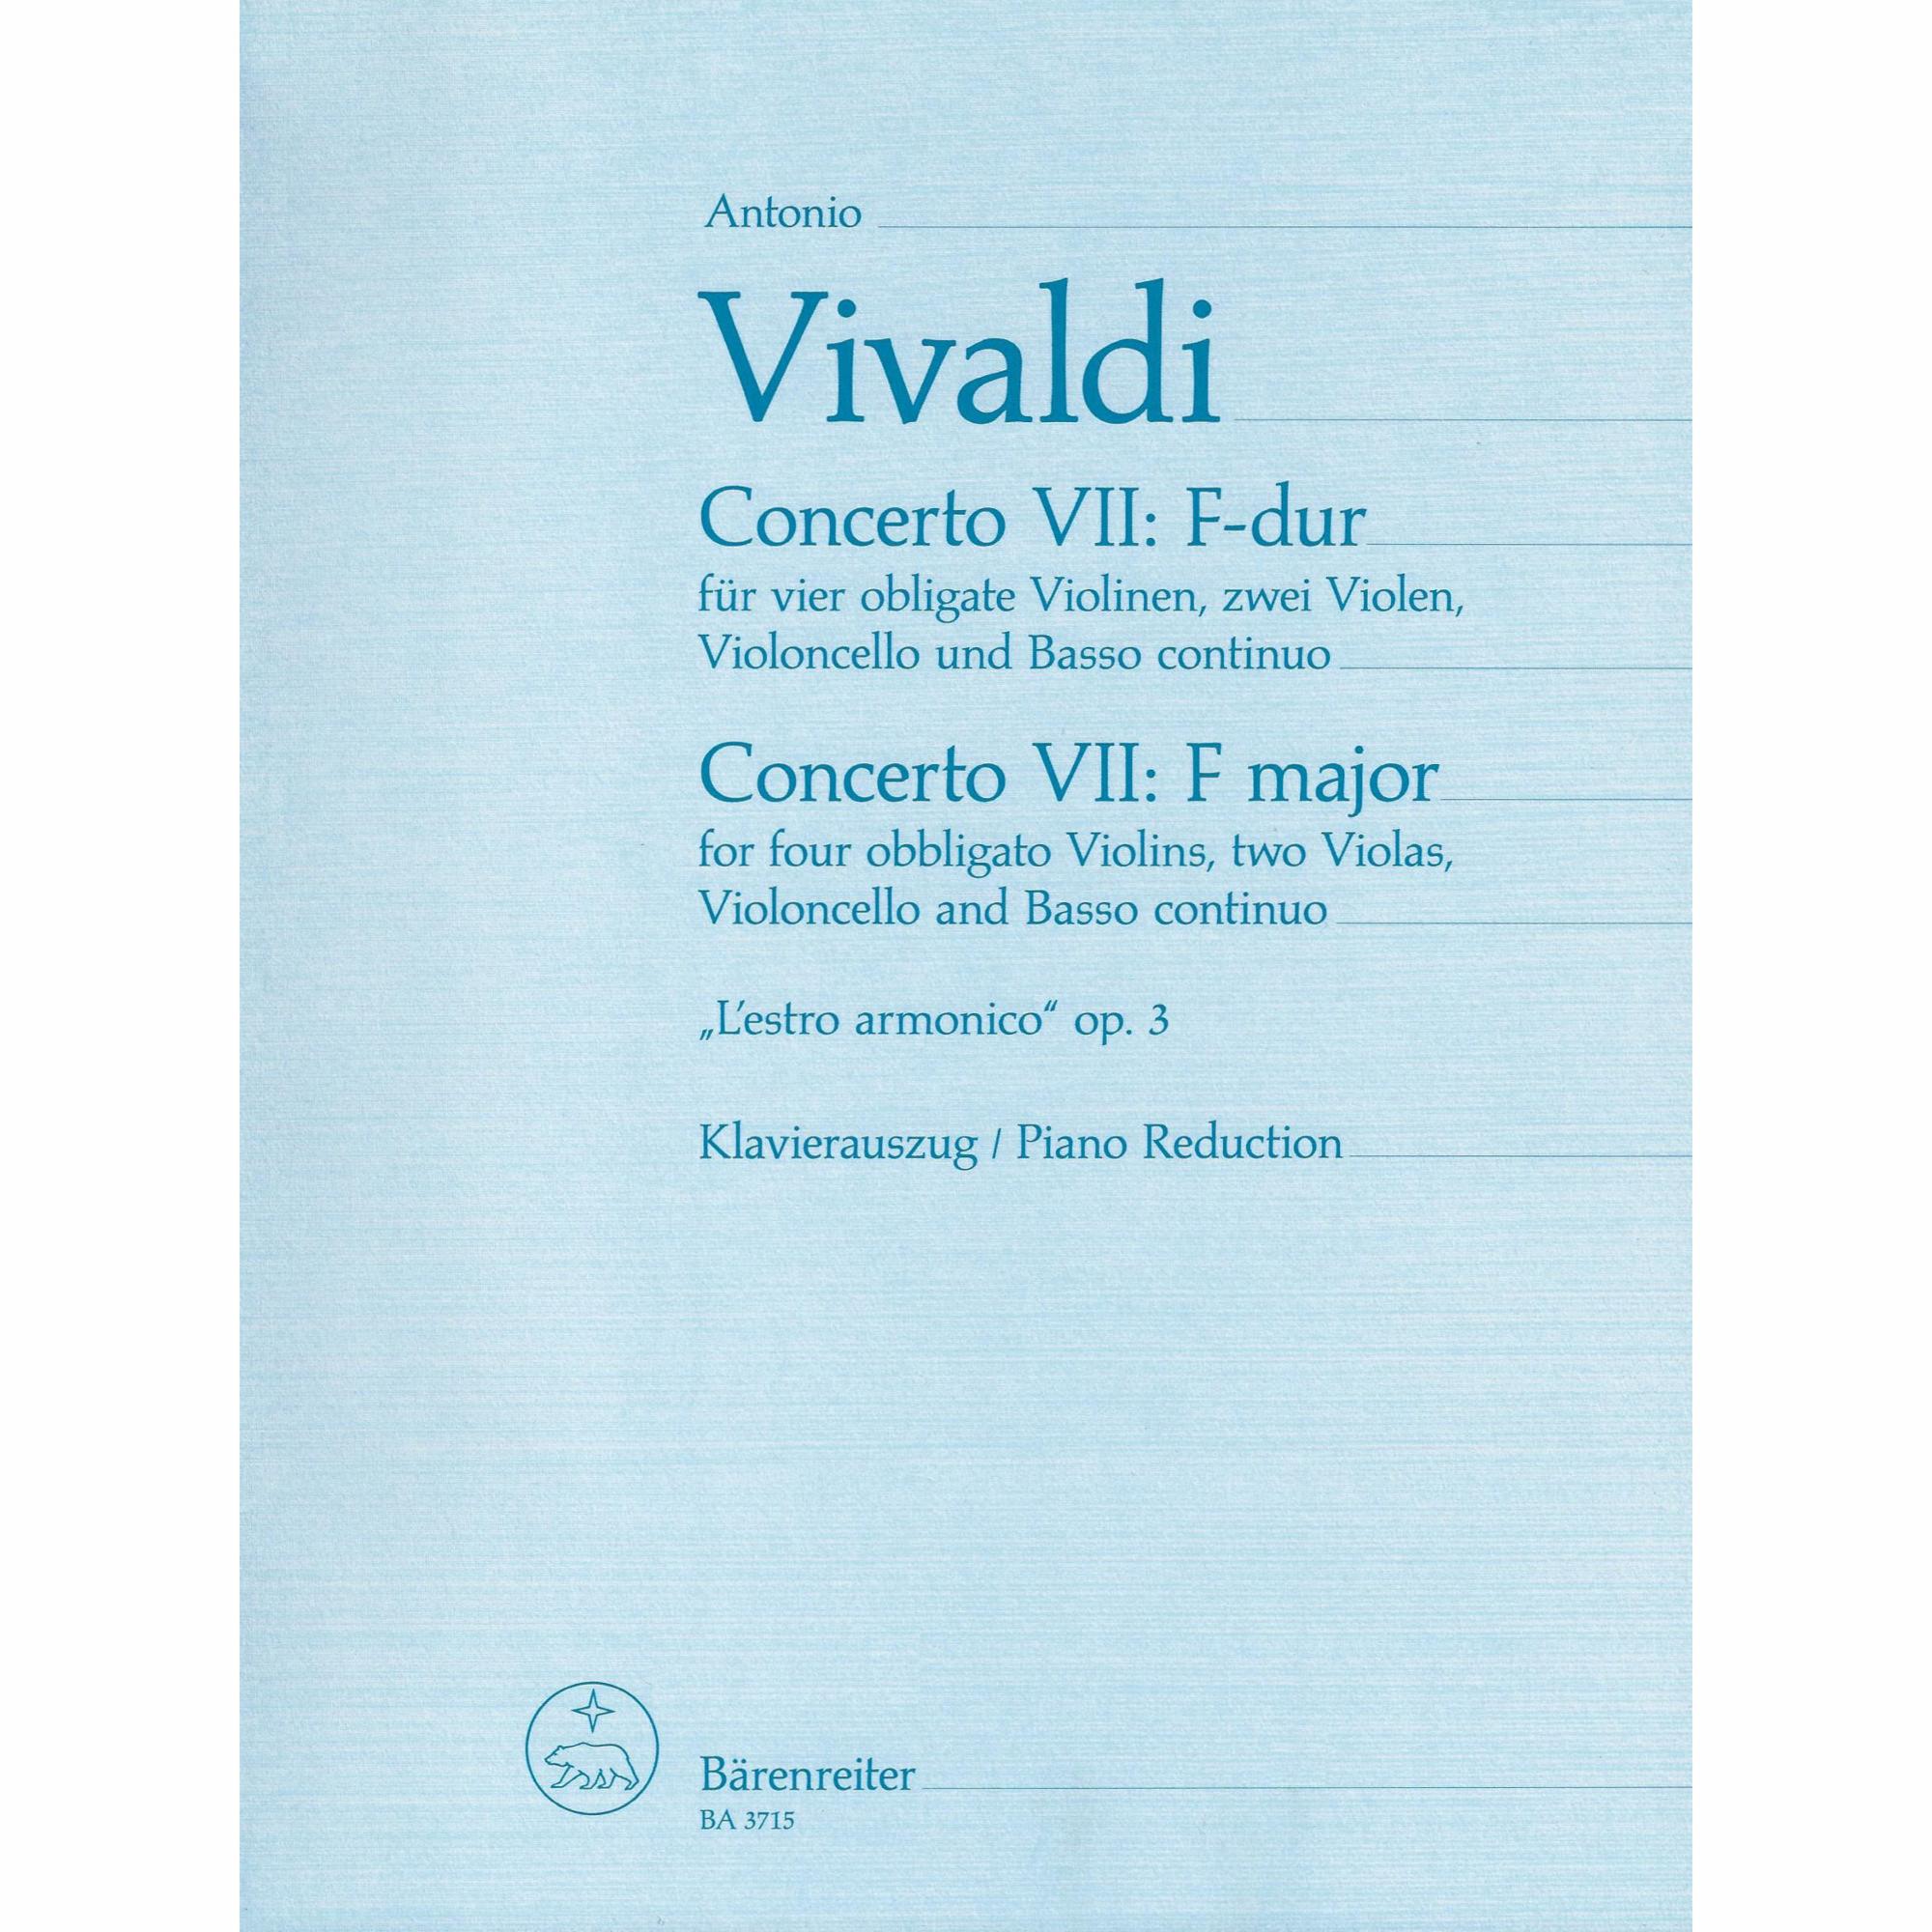 Vivaldi -- Concerto in F Major, from L'estro armonico, Op. 3, No. 7 for Four Violins and Piano